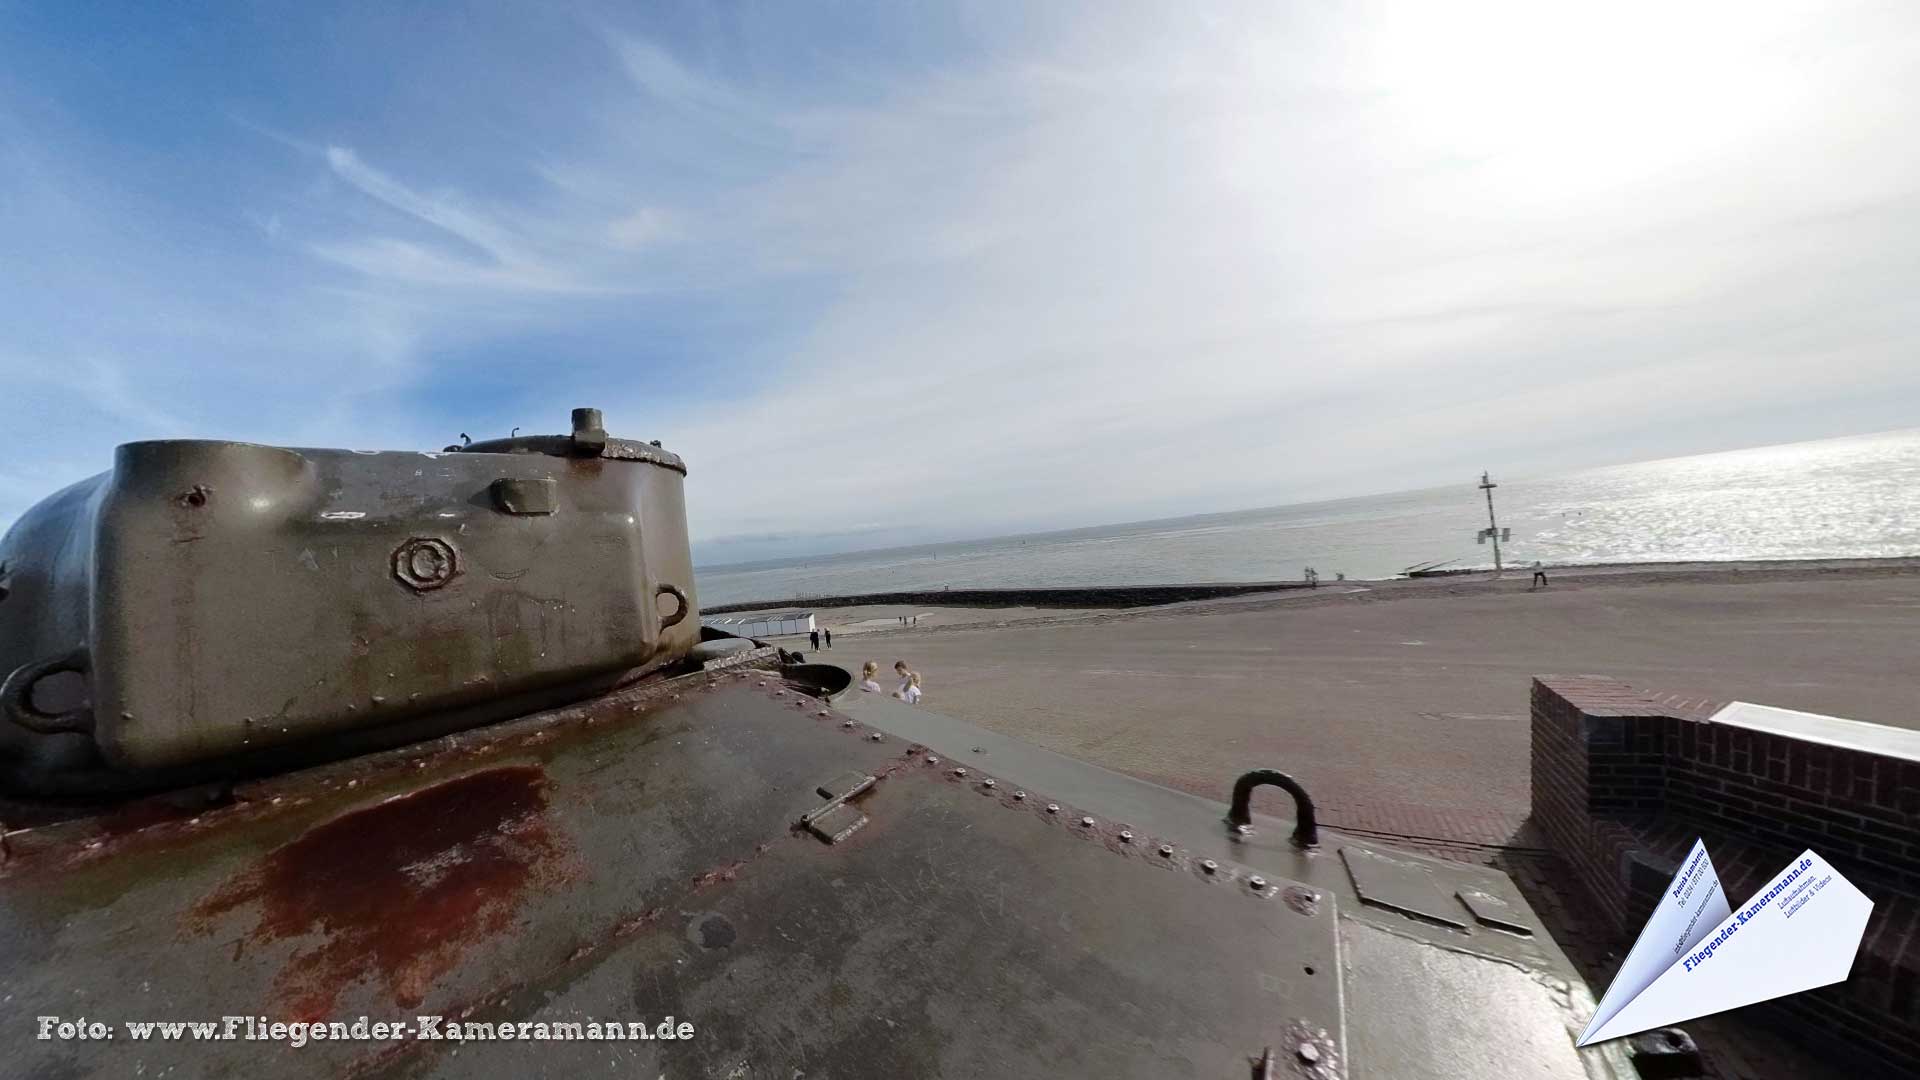 Tank in het Oorlogsmuseum "Polderhuis" in Westkapelle (NL) - 360°-Panorama